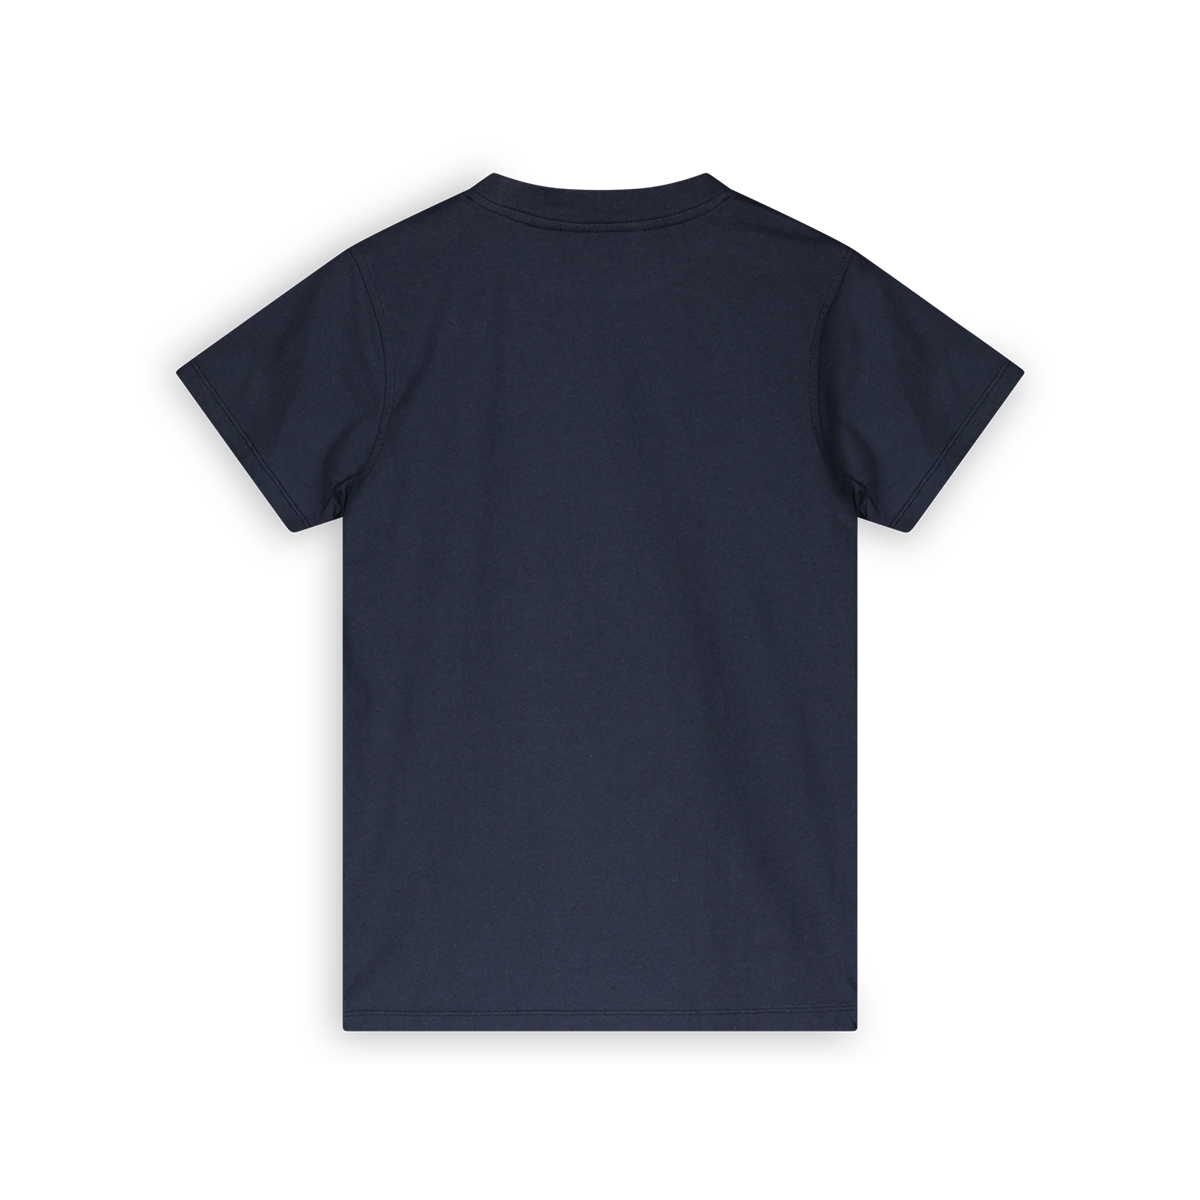 717 T-shirt Navy Blazer